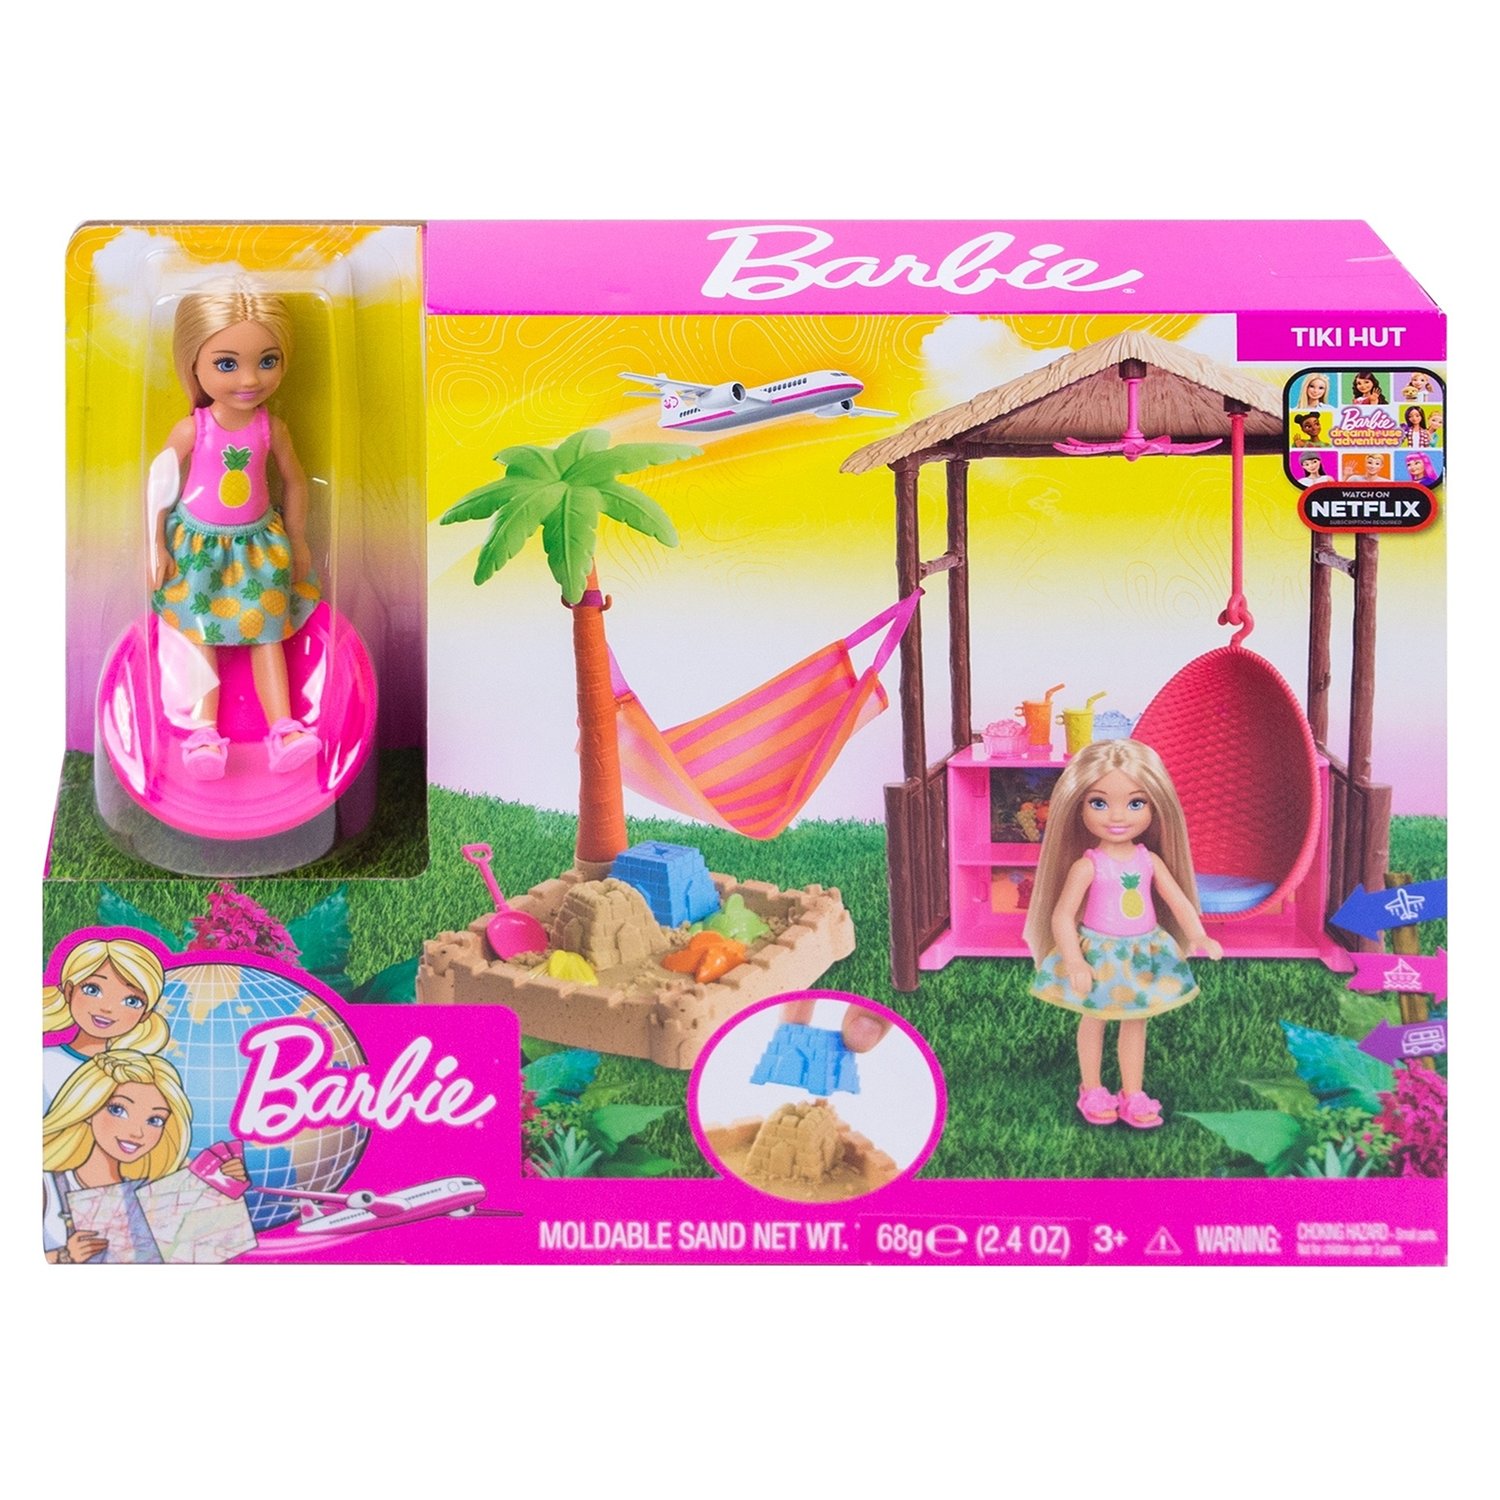 Barbie игровой набор путешествия Челси и Хижина fwv24